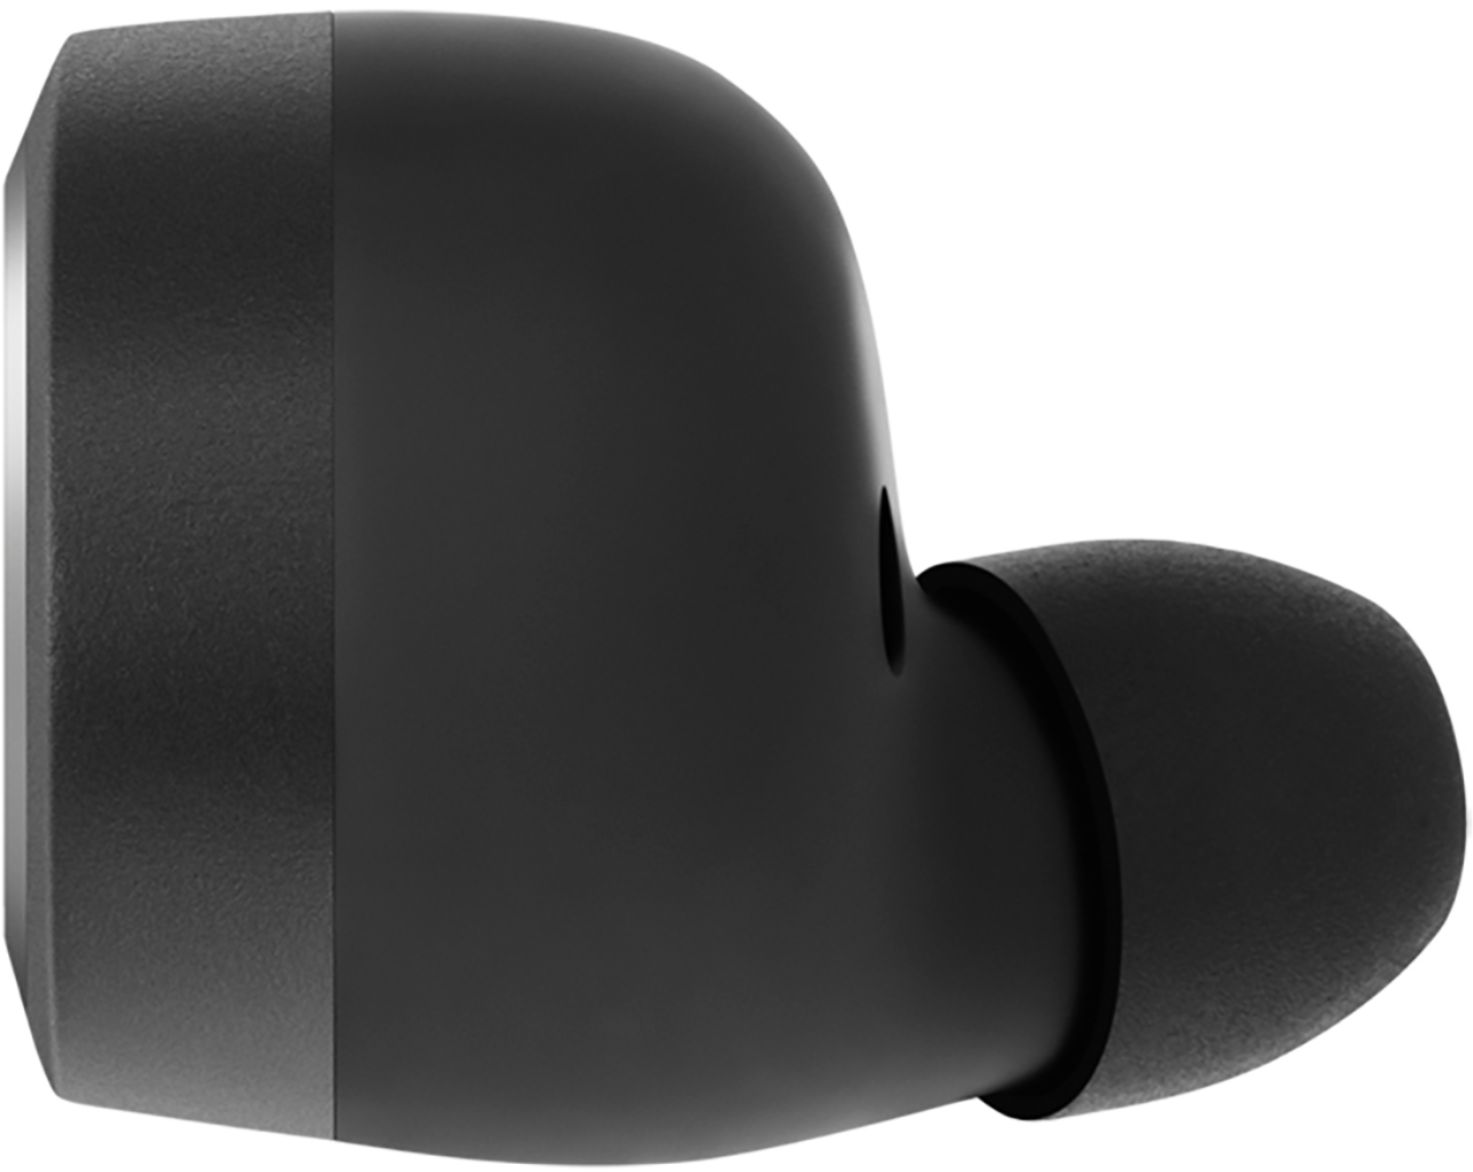 Bang & Olufsen Beoplay E8 3rd Gen Earphones Black 53520BBR - Best Buy